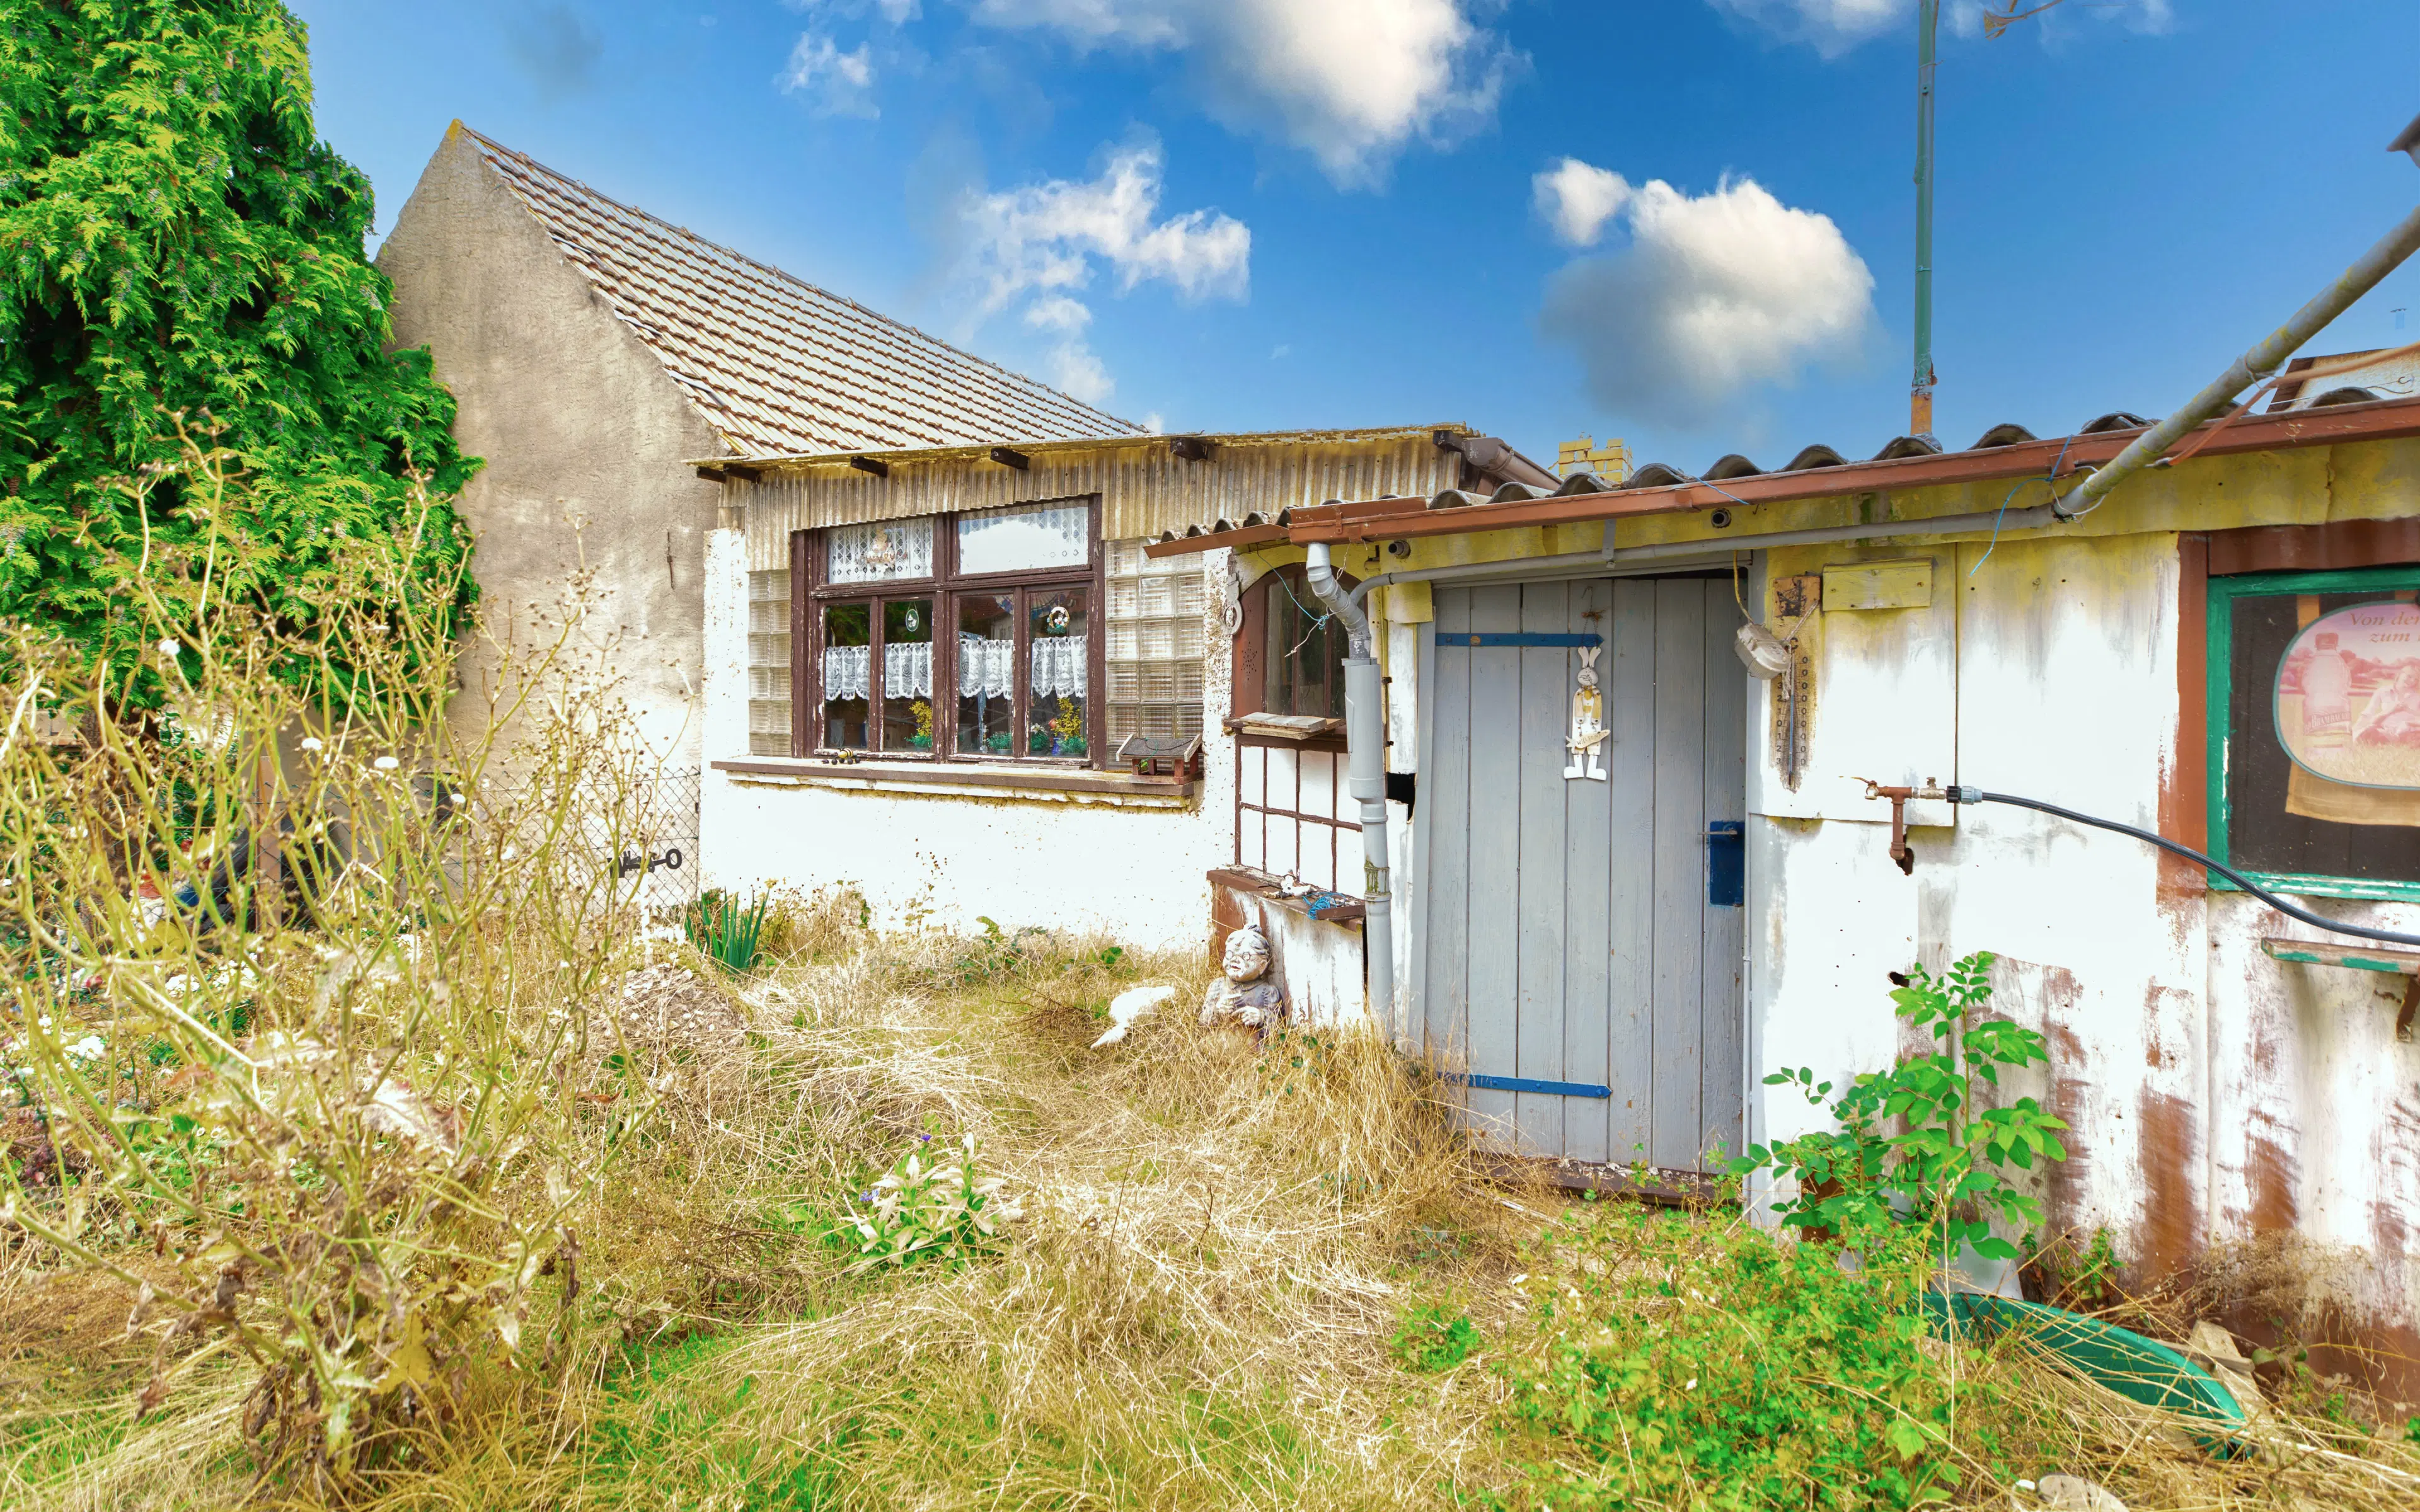 Vrijstaande woning met garage en bijgebouwen in Crossen an der Elster - Duitsland